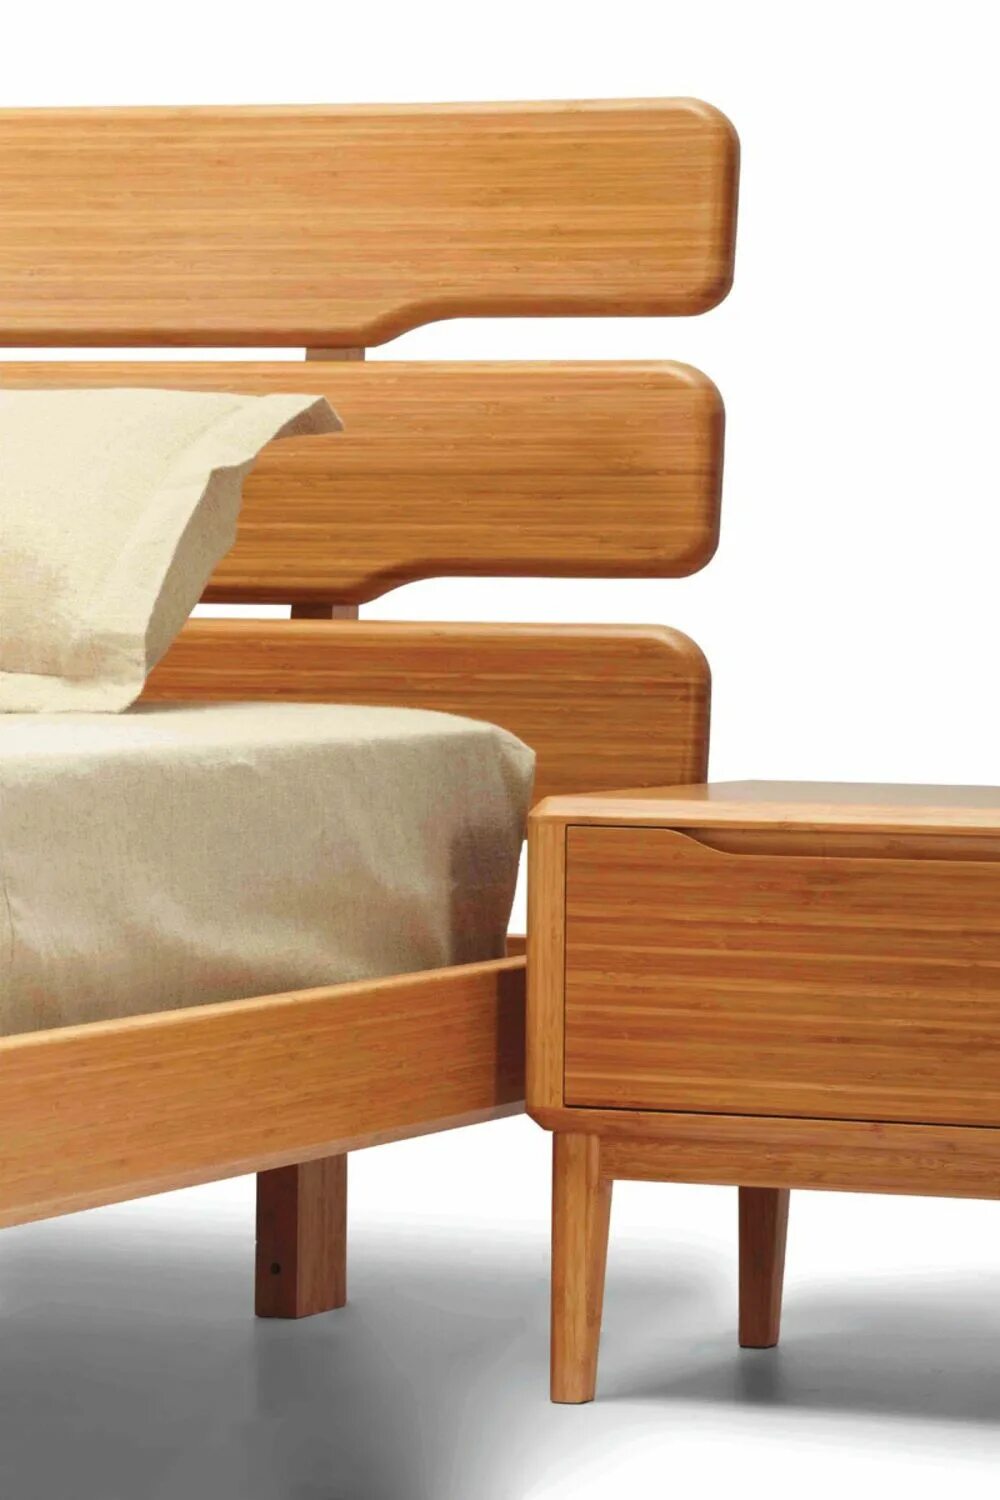 Тн мебель. Бамбуковая мебель. Бамбук мебель. Мебель из бамбука кровати. Изящная мебель из дерева.